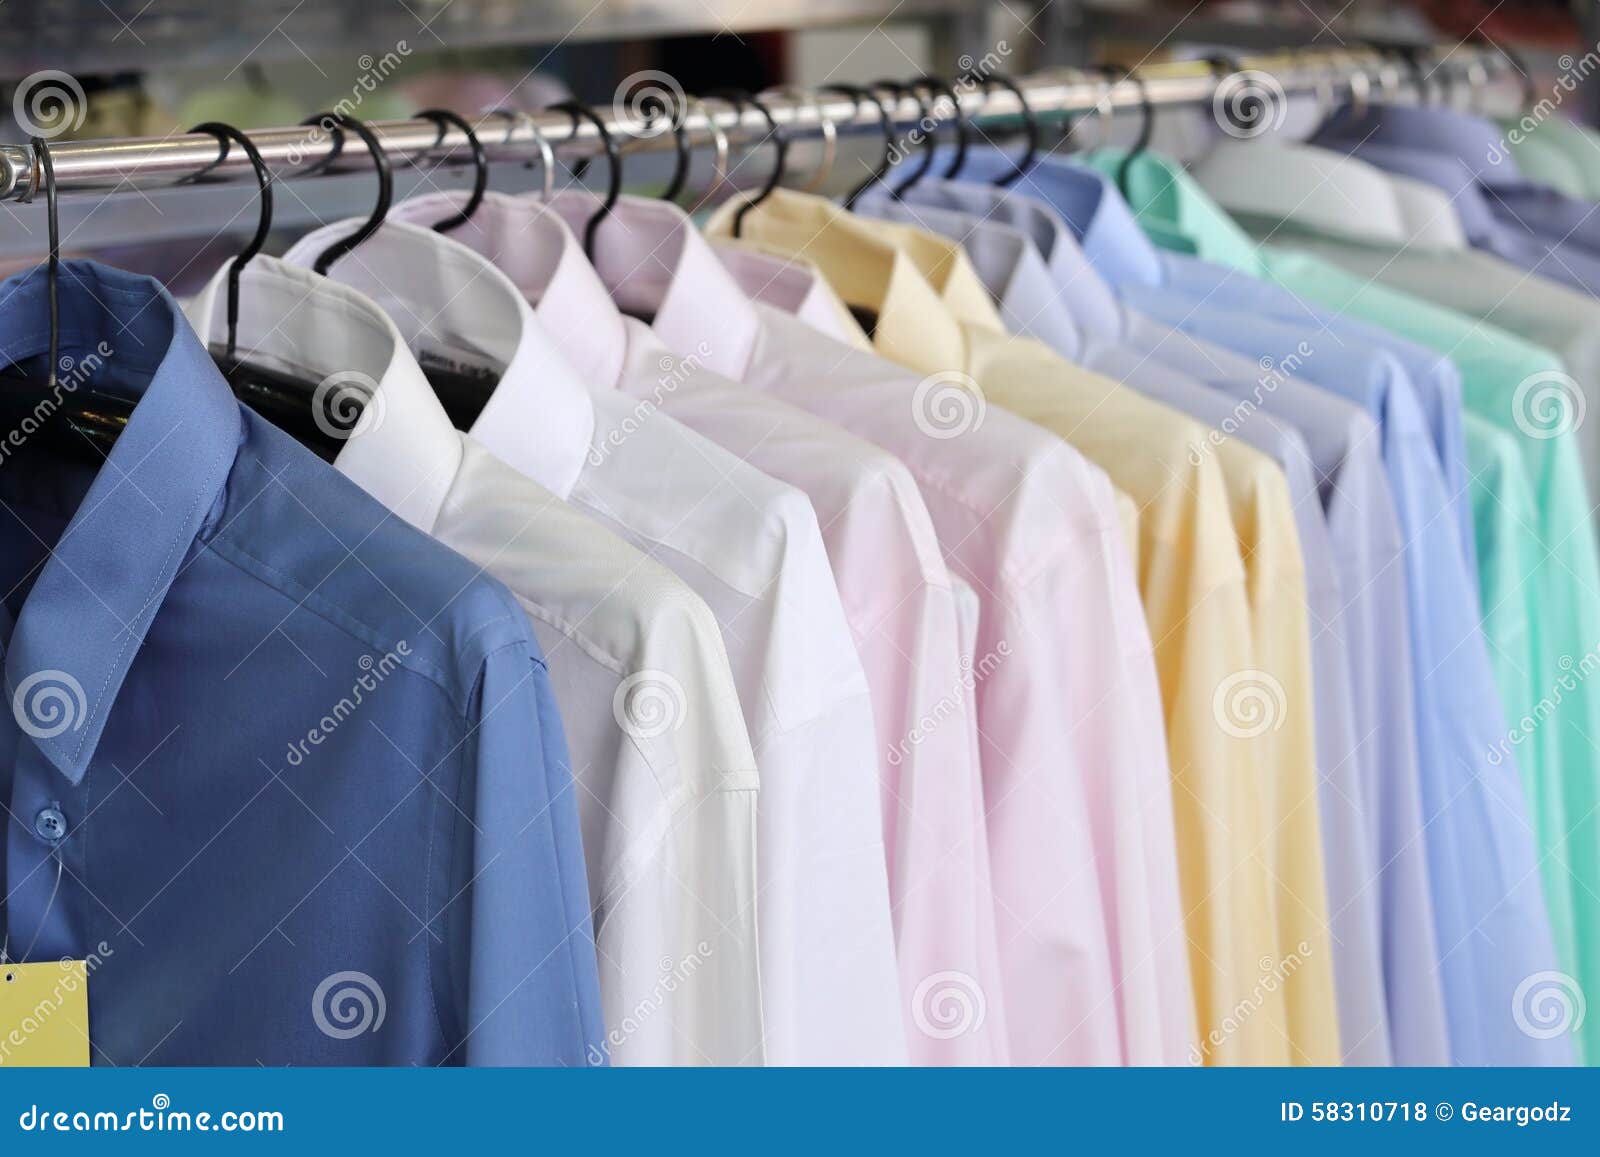 https://thumbs.dreamstime.com/z/mens-plaid-shirts-hangers-retail-store-men-s-different-colors-shop-58310718.jpg